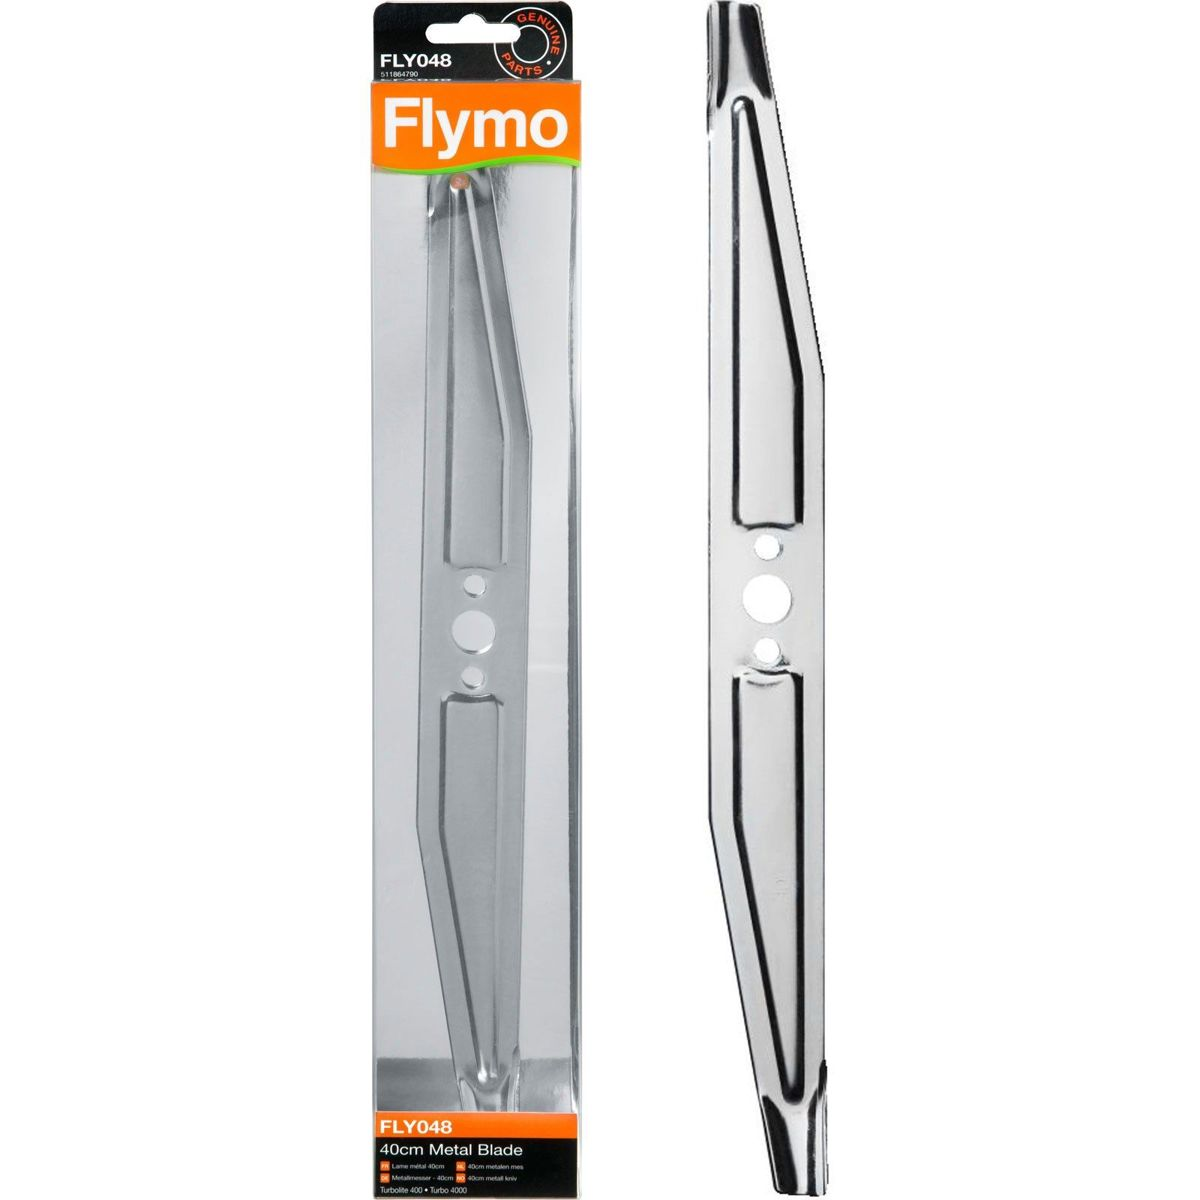 Flymo fly048 maaimes turbo 40cm | 5011759903851